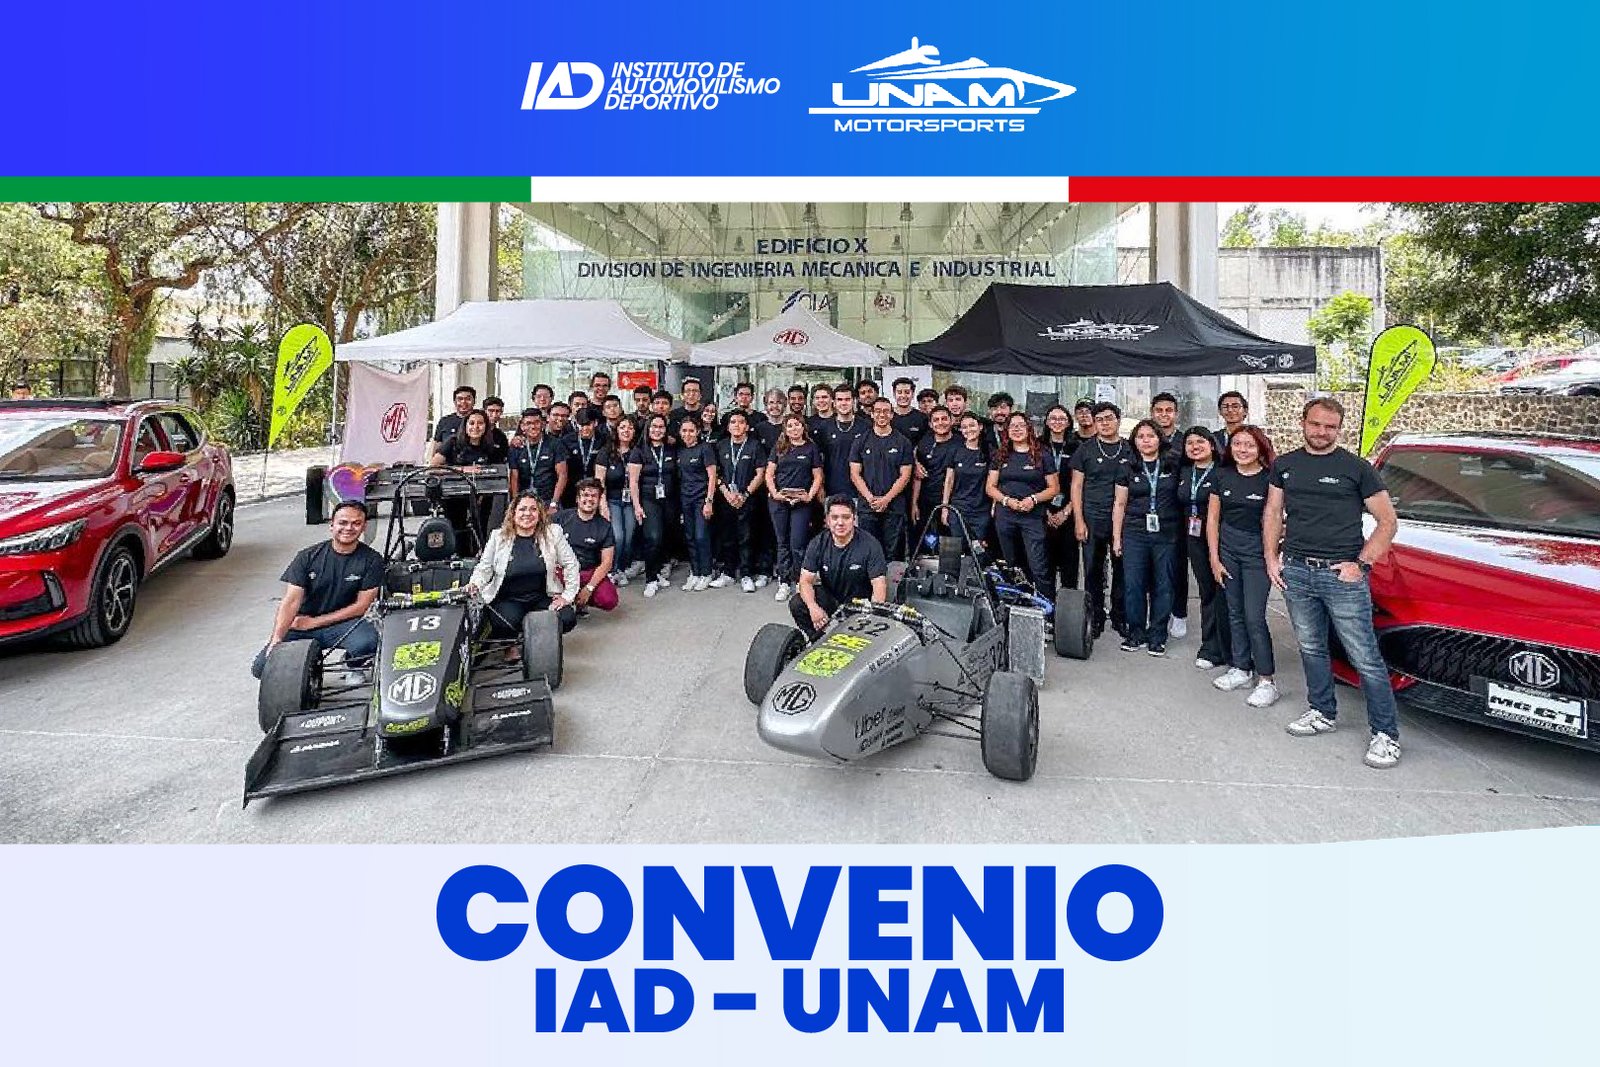 IAD - UNAM